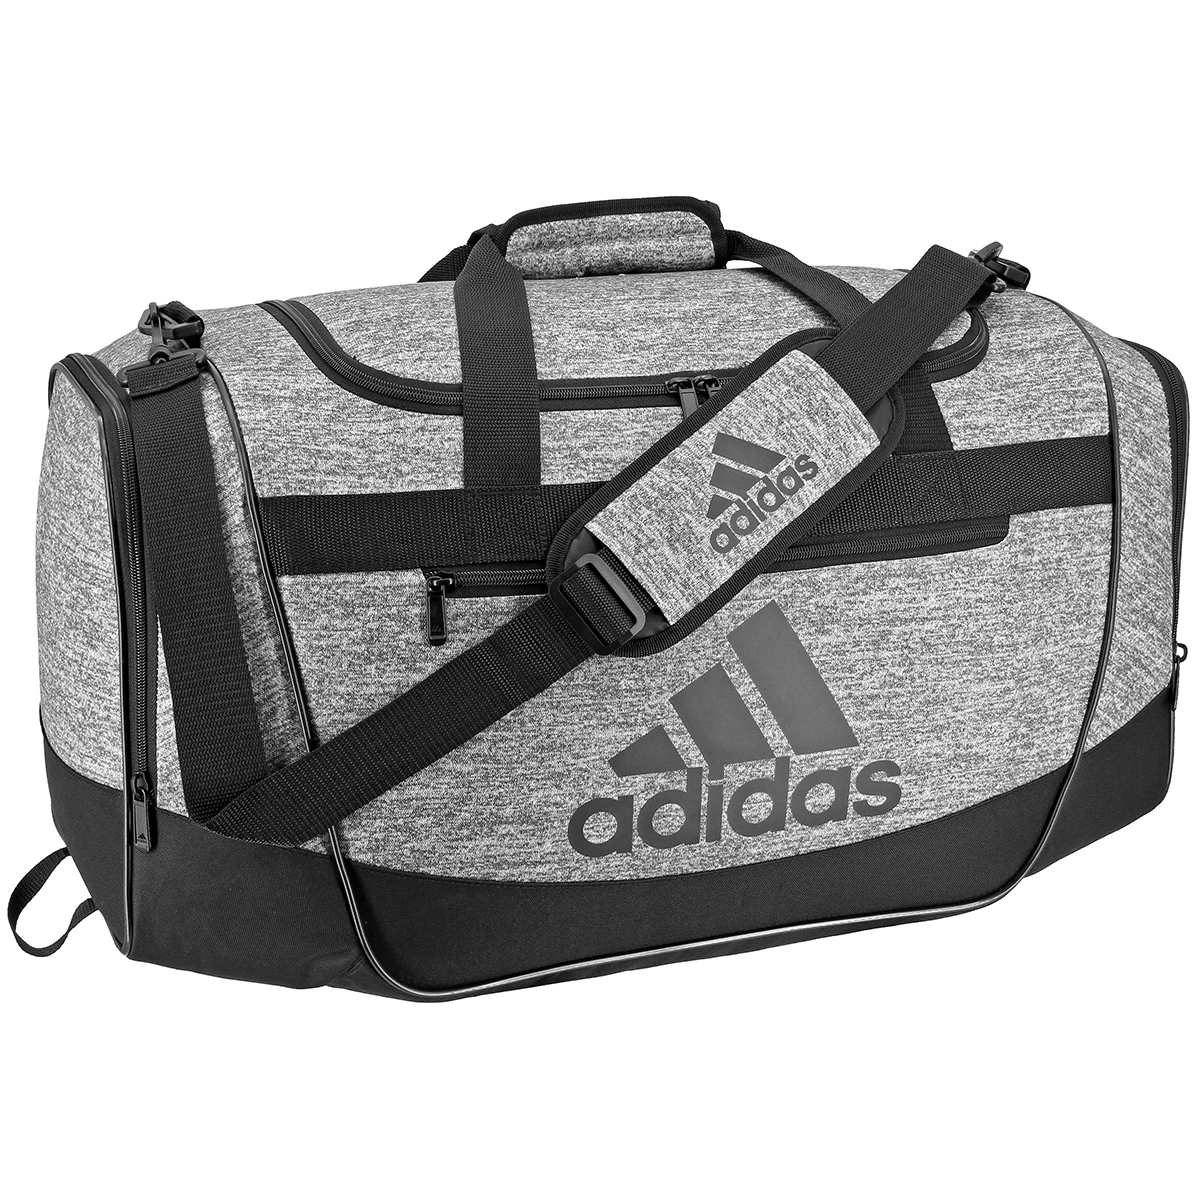 Adidas Defender Iii Duffel Bag, Medium